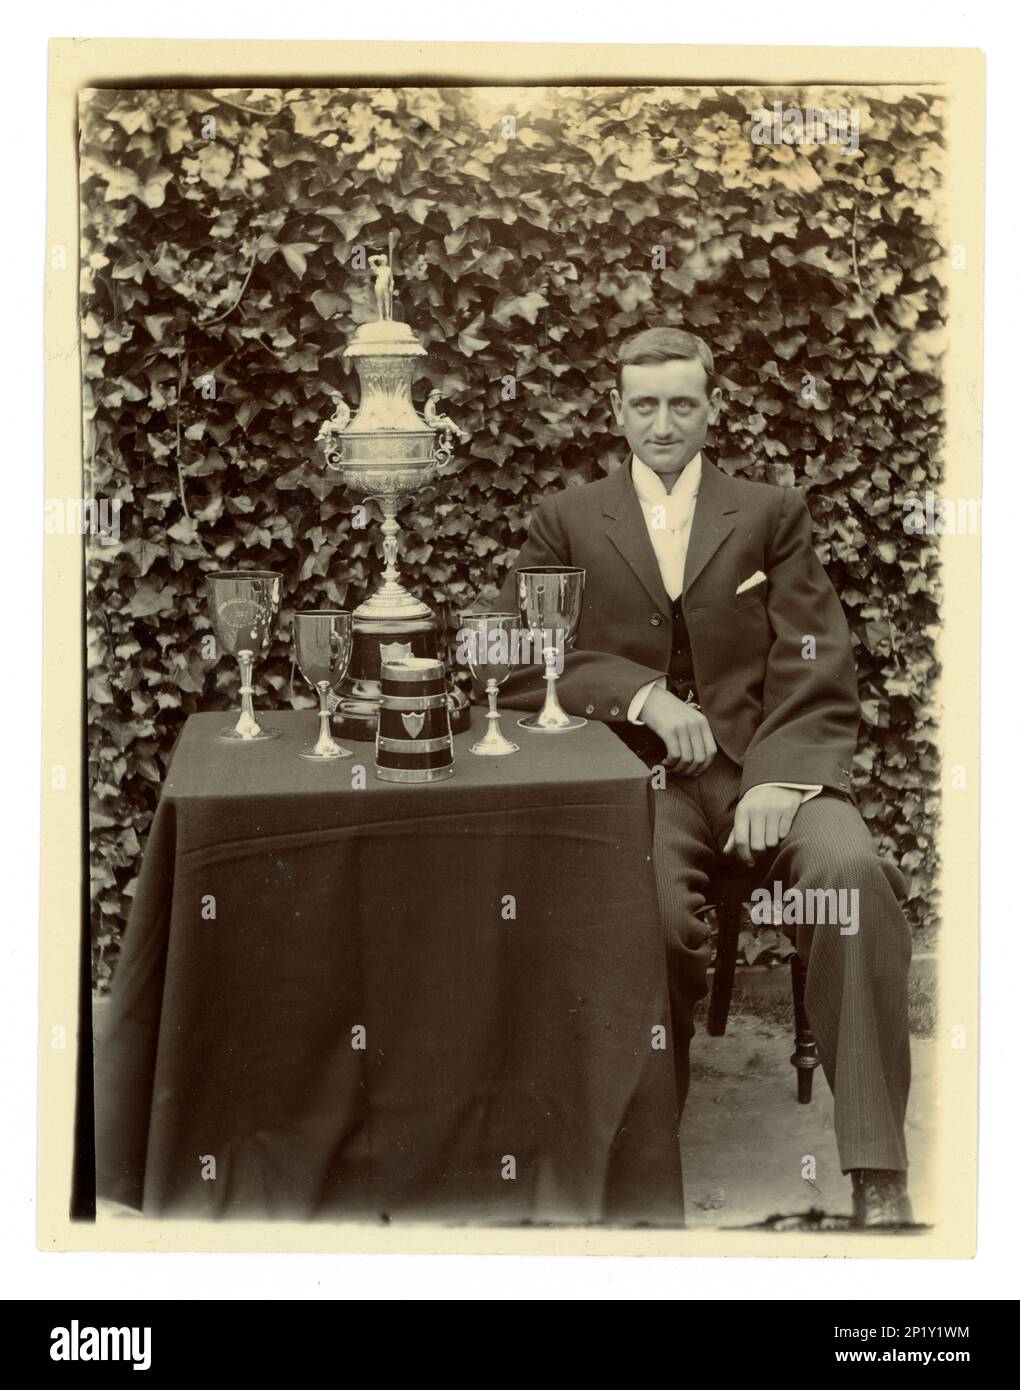 Originale vittoriano fotografia di gand, su un tavolo è esposto un grande vaso sfida Worcester, / trofeo regata per il canottaggio, e altre tazze, possibilmente membro di un coxed quattro equipaggio. Area di Worcester, Regno Unito circa 1897-1899 Foto Stock